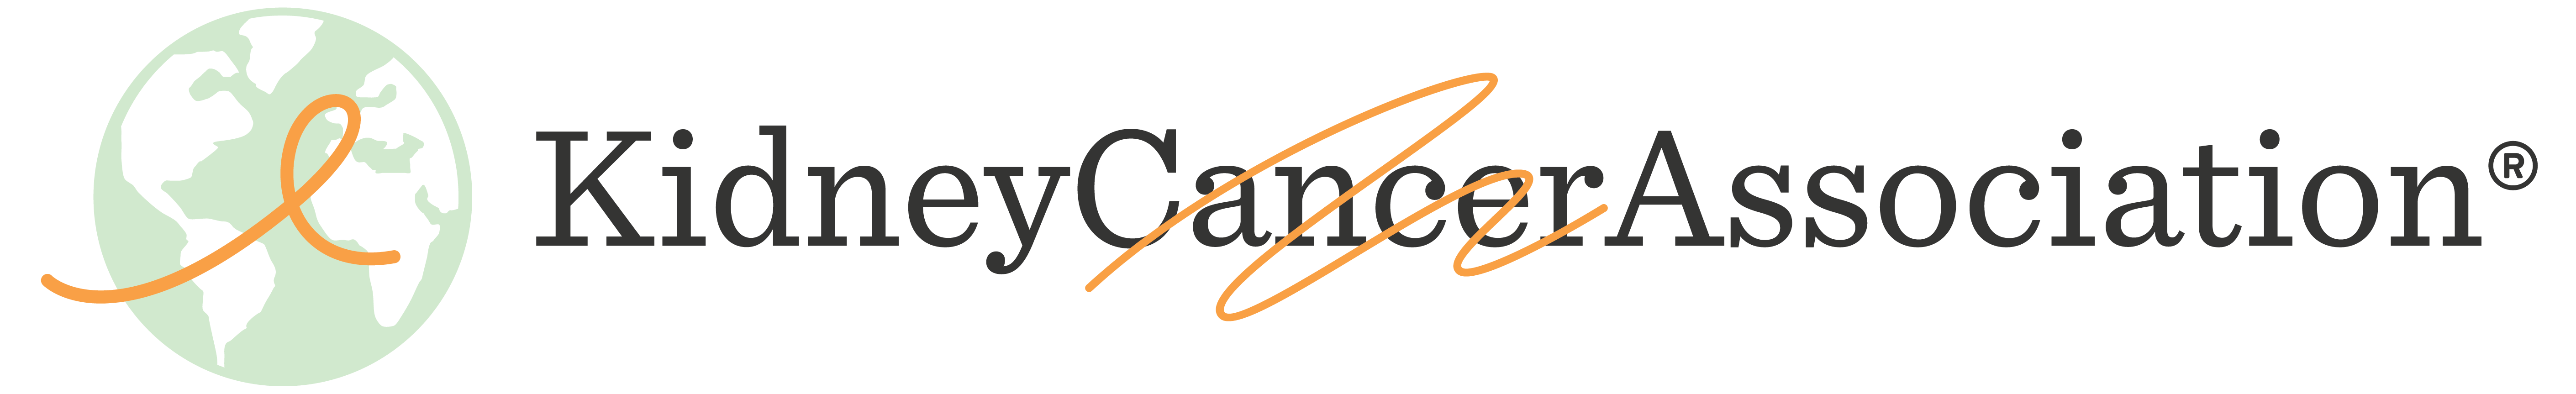 Kidney Cancer Association Logo